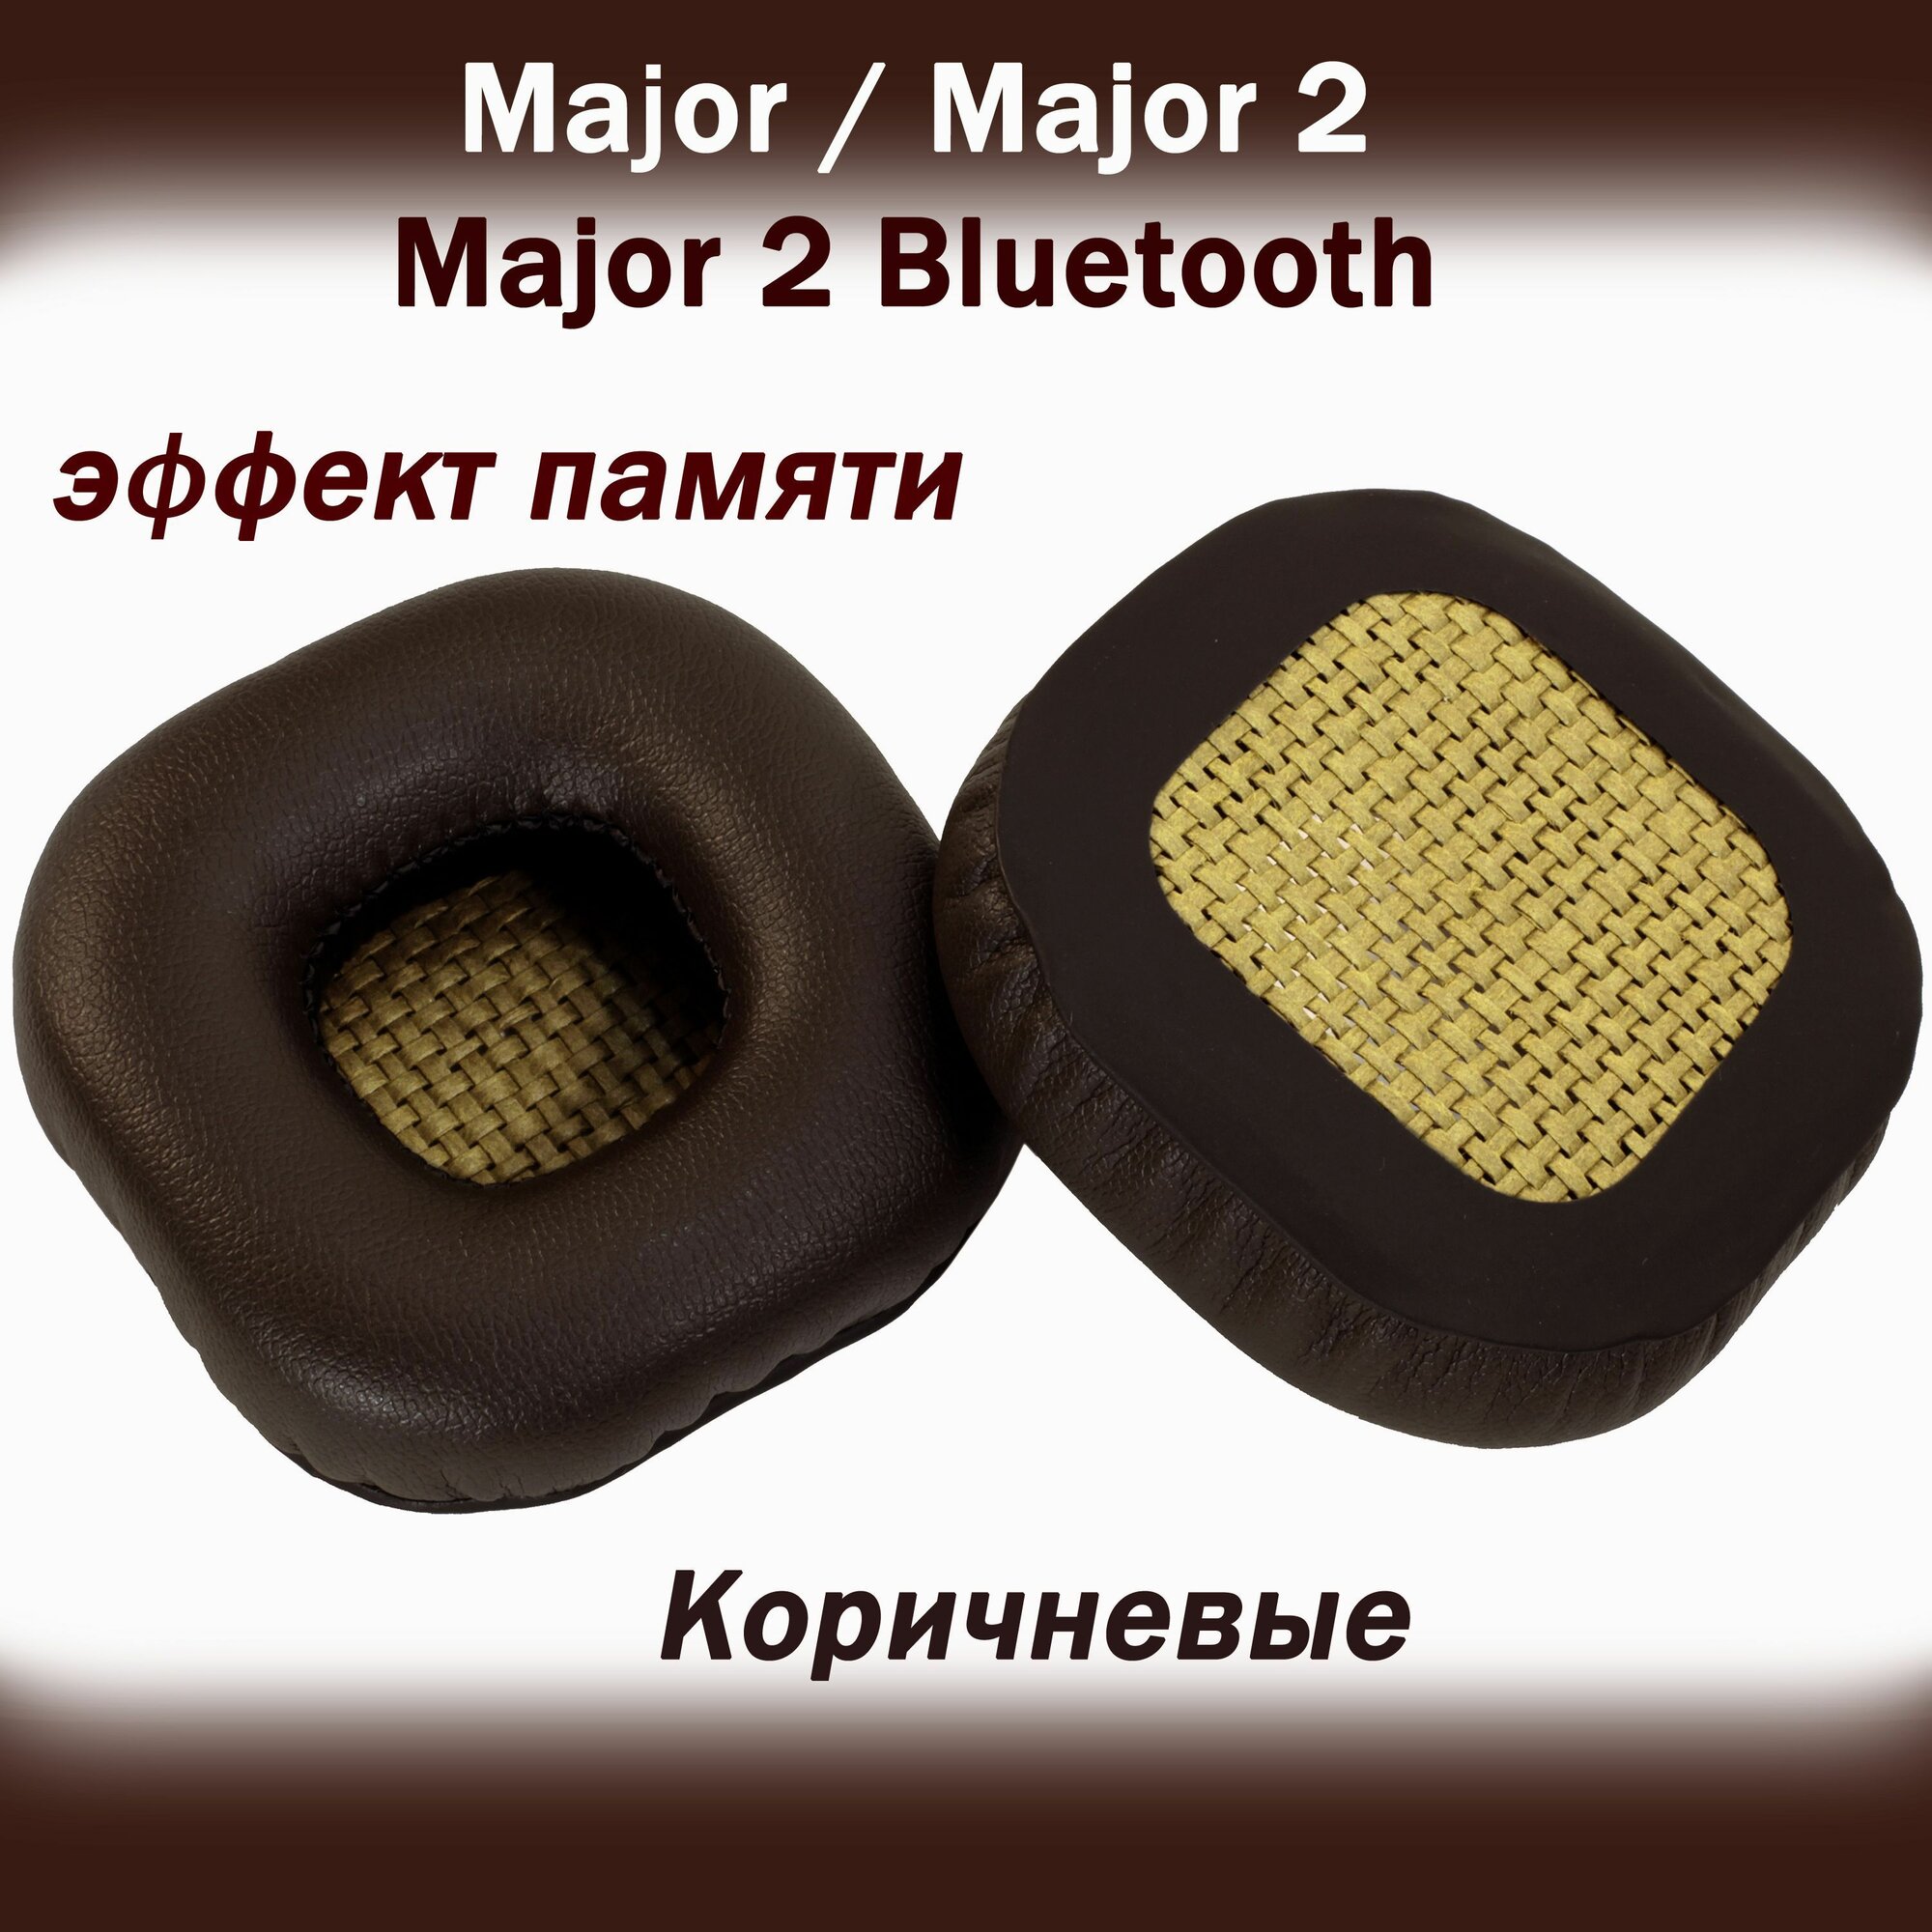 Амбушюры Marshall Major 2 Bluetooth, Major 2, Major 1 коричневые